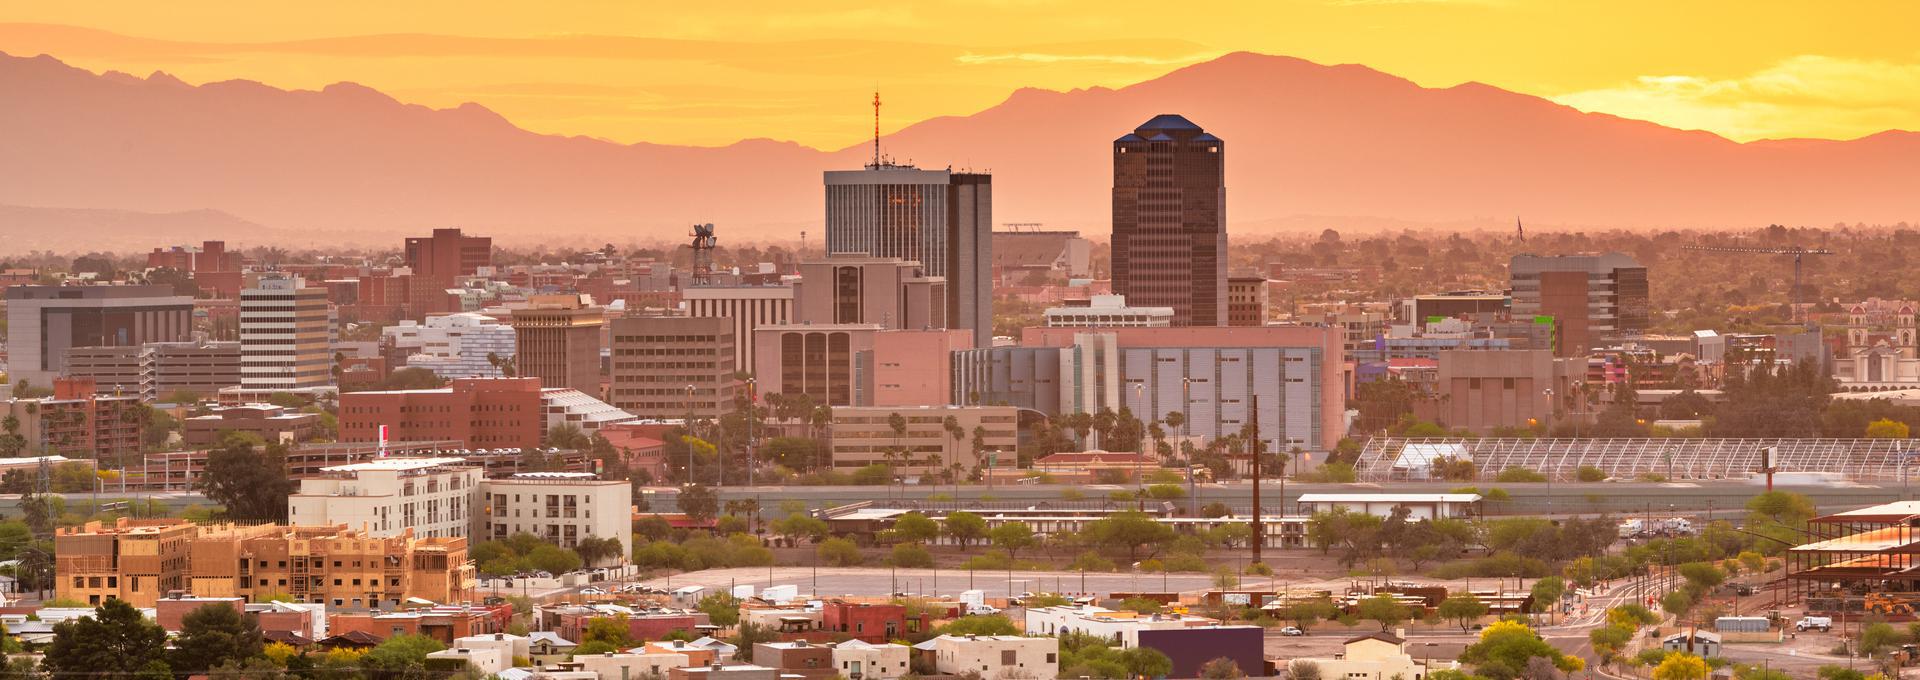 Tucson - 